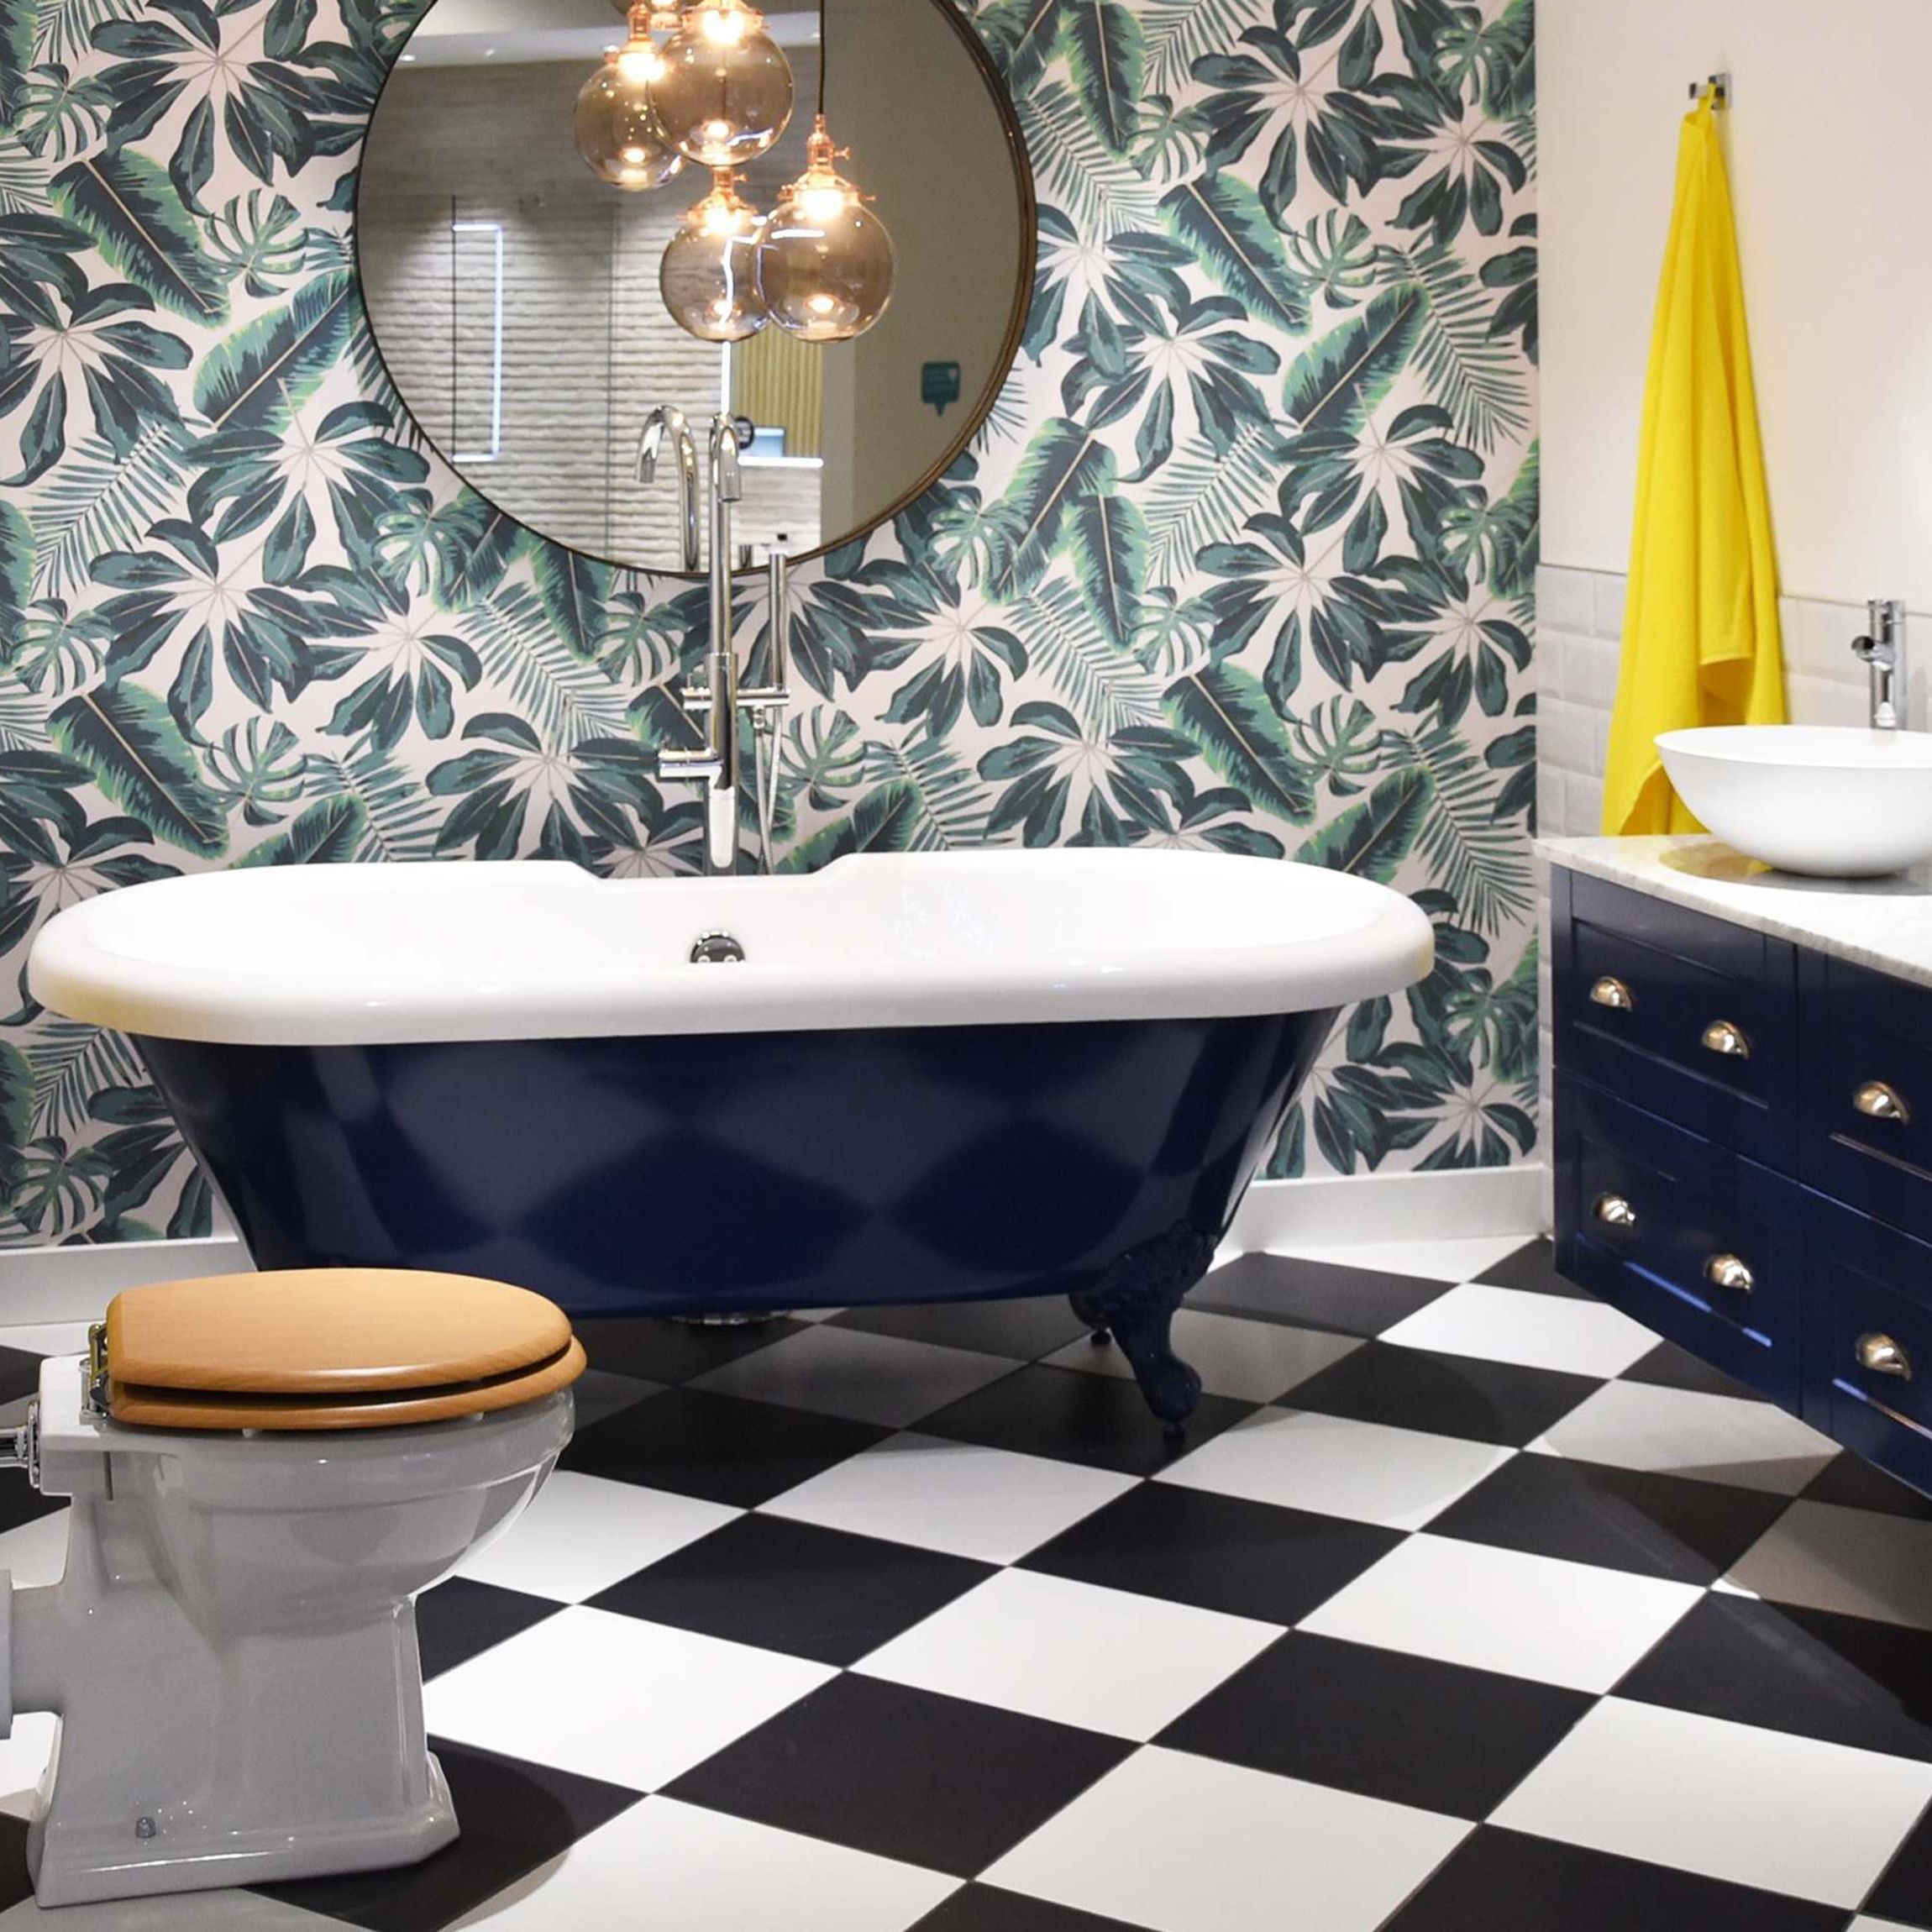 Chess White Floor Tile Tiles, Black And White Bathroom Floor Tile Designs